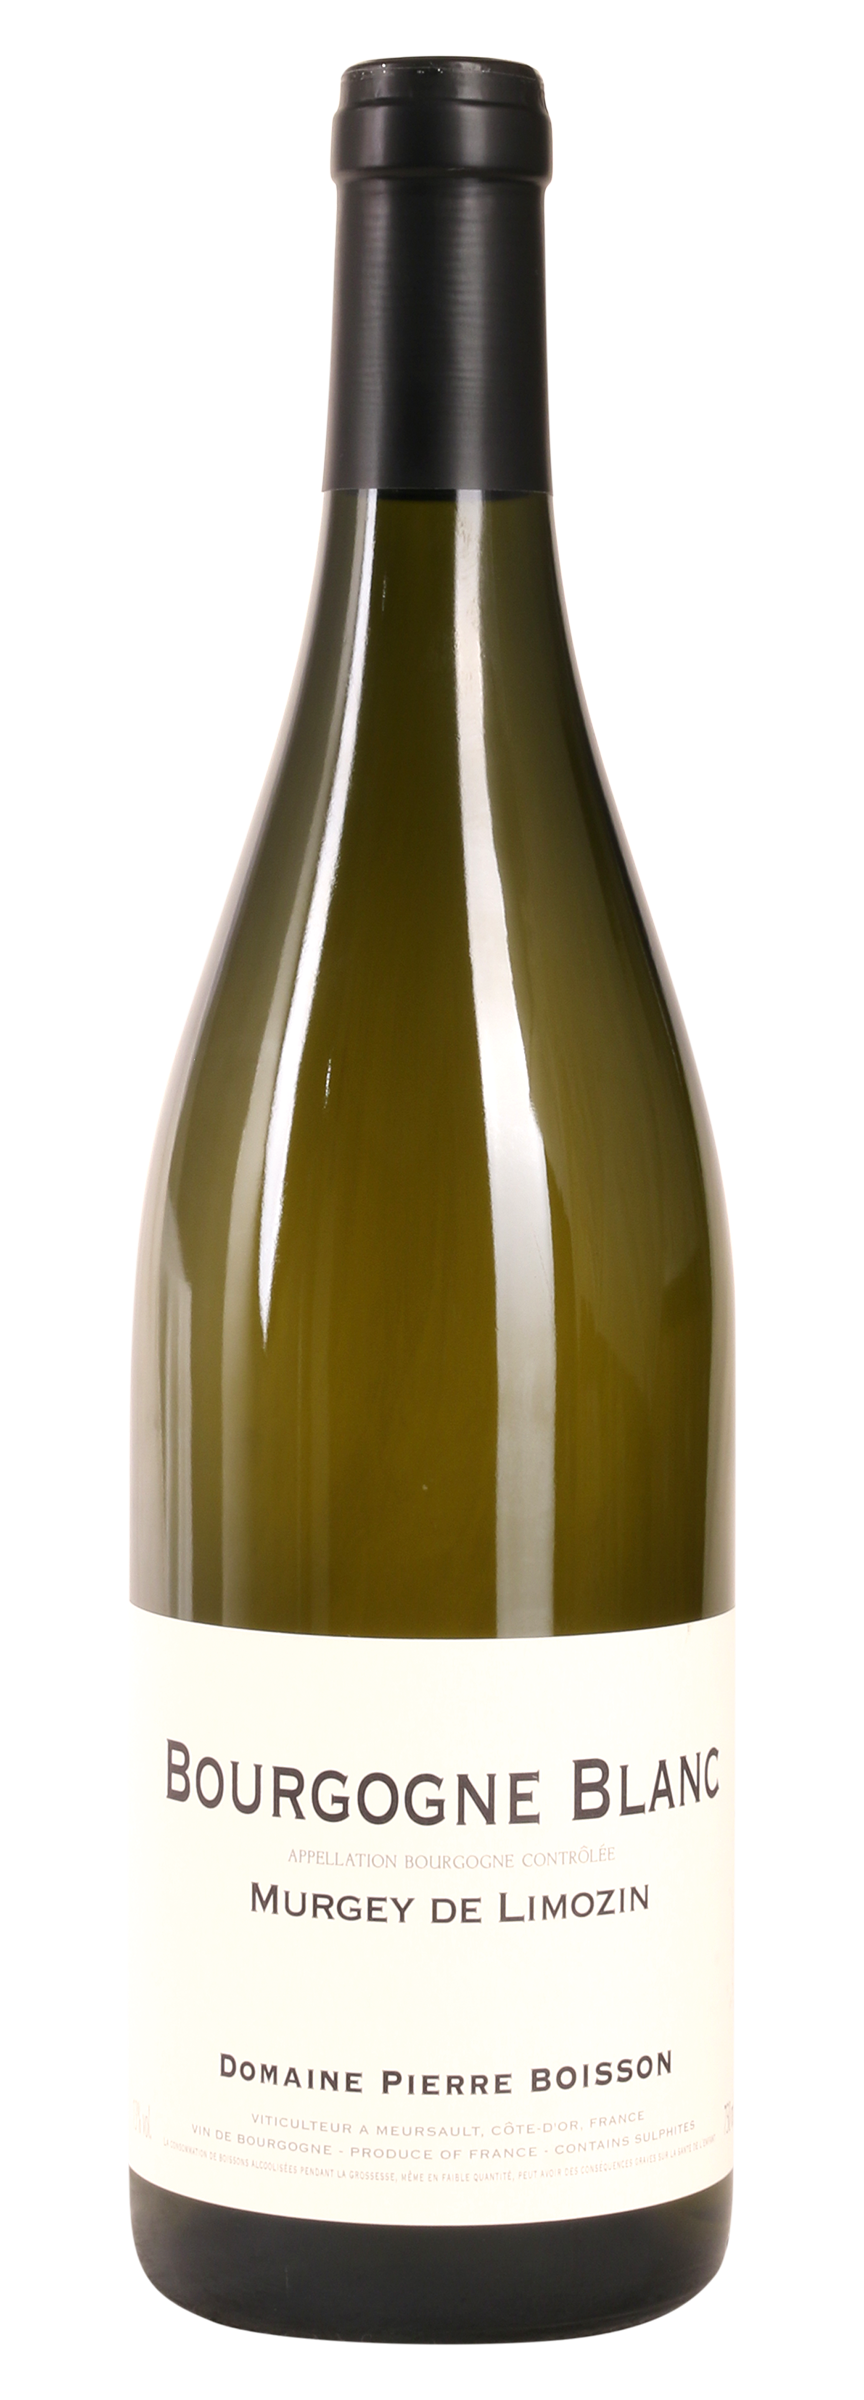 „Murgey de Limozin“ Bourgogne blanc (Pierre Boisson)